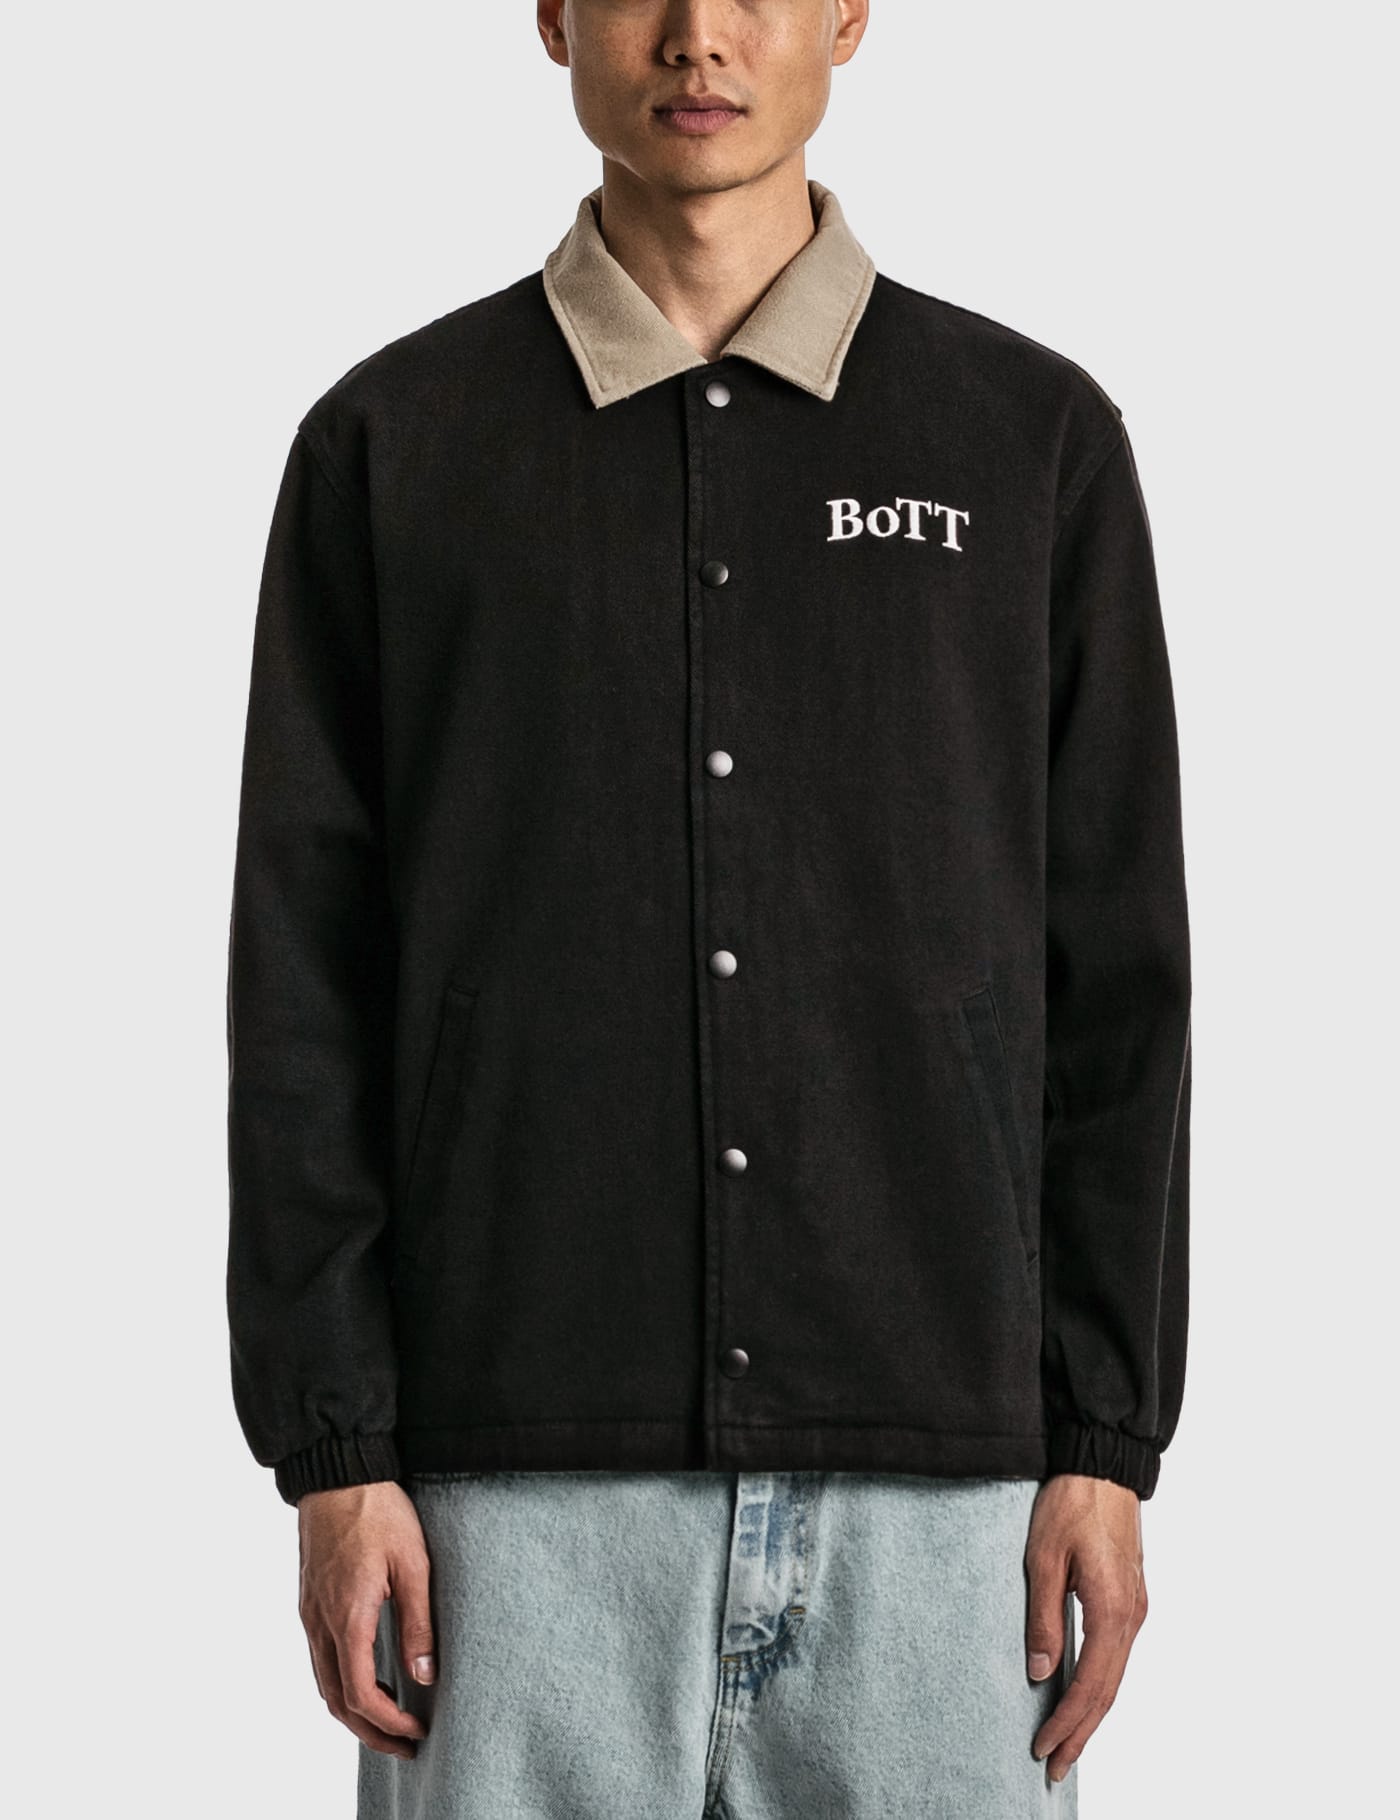 6,600円BoTT Heavy Twill Coach Jacket ブラック Mサイズ